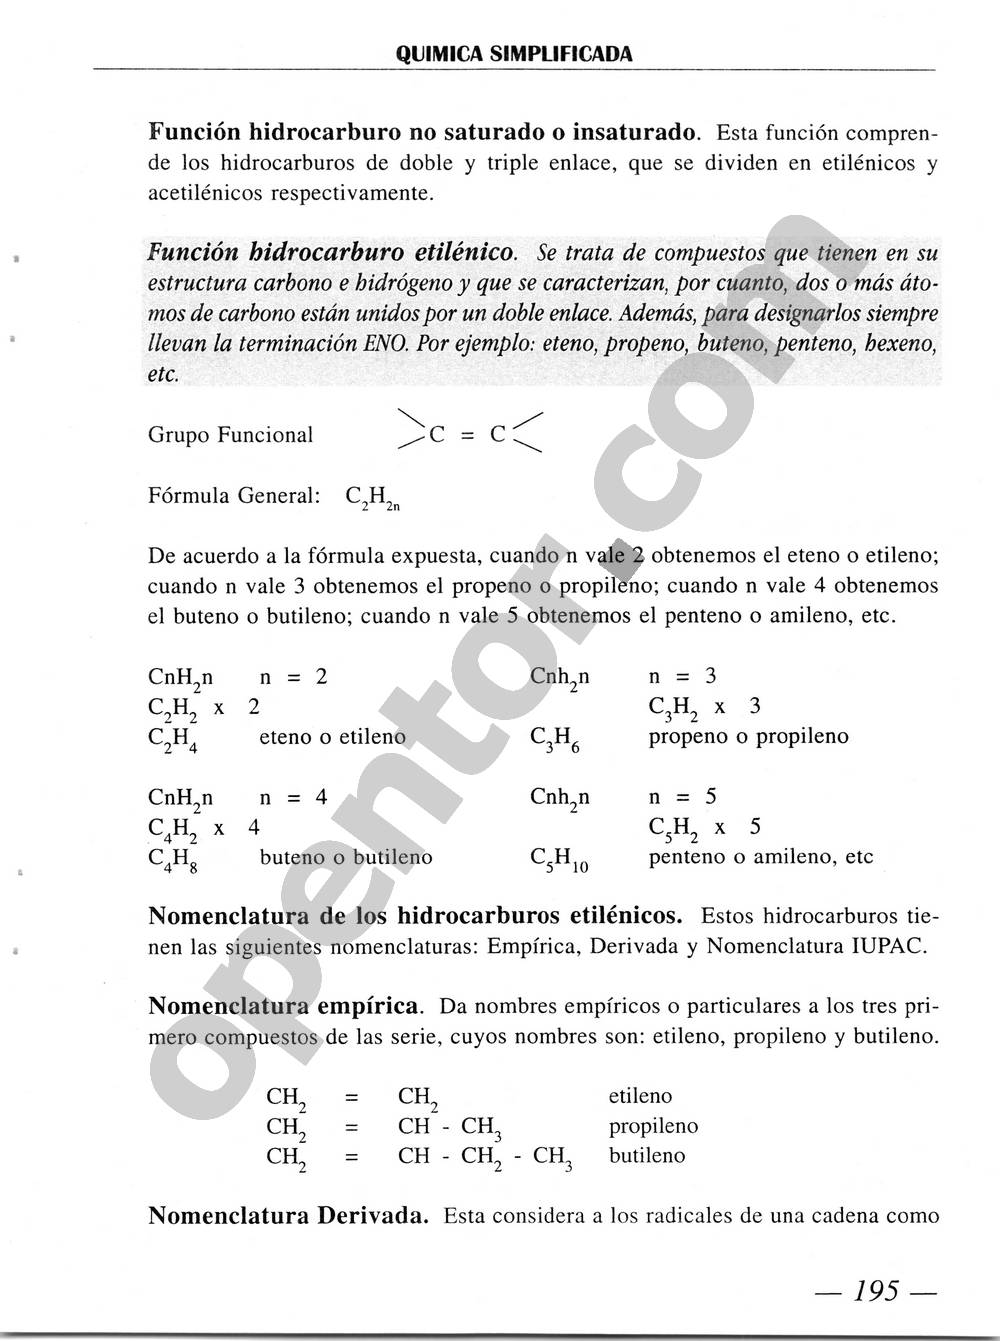 Química Simplificada de Diómedes Solano - Página 195